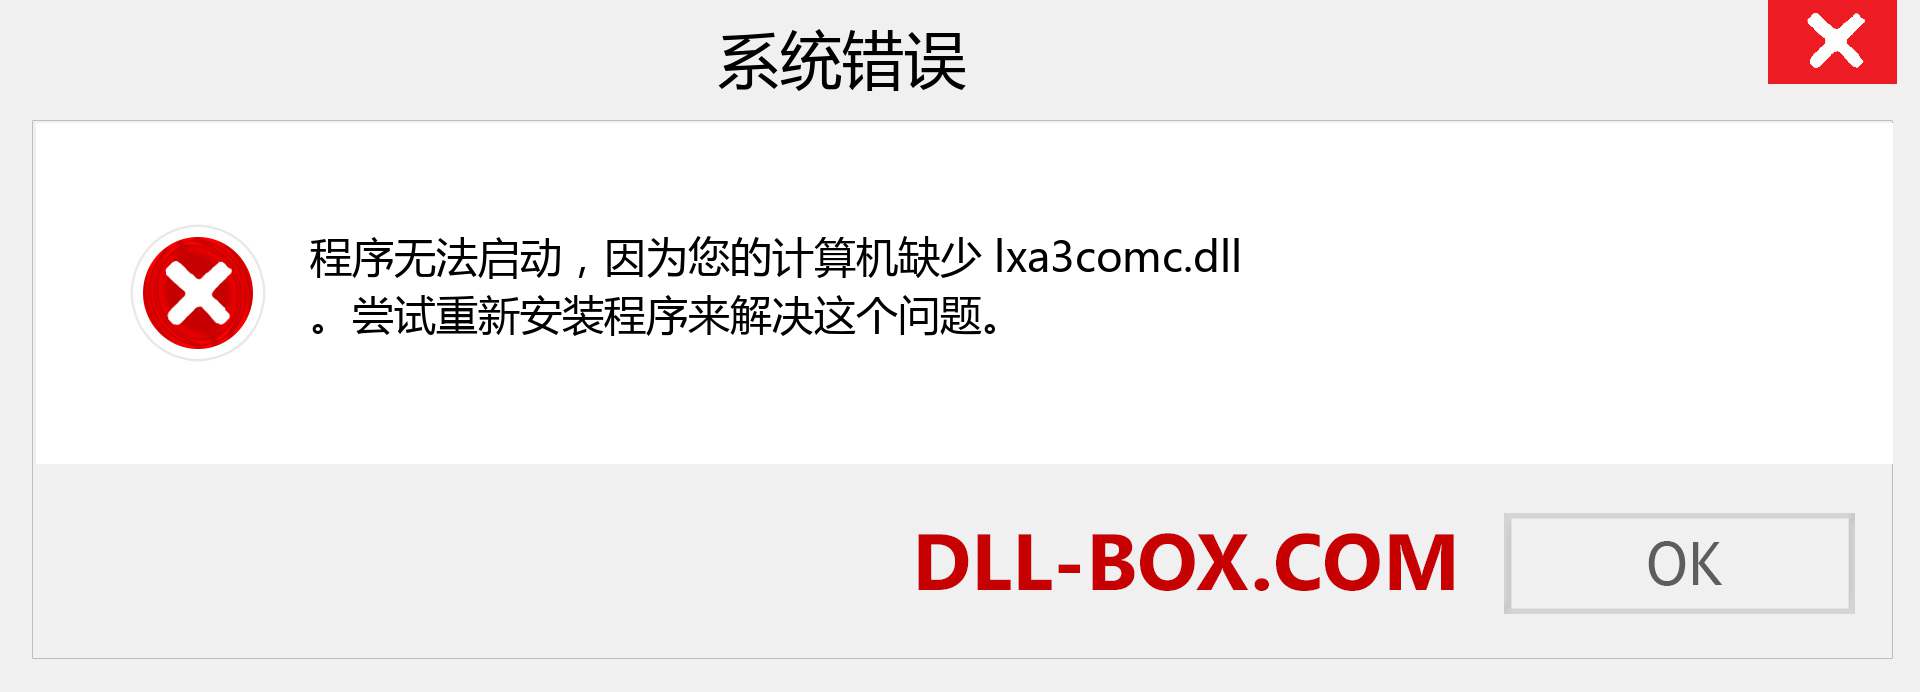 lxa3comc.dll 文件丢失？。 适用于 Windows 7、8、10 的下载 - 修复 Windows、照片、图像上的 lxa3comc dll 丢失错误